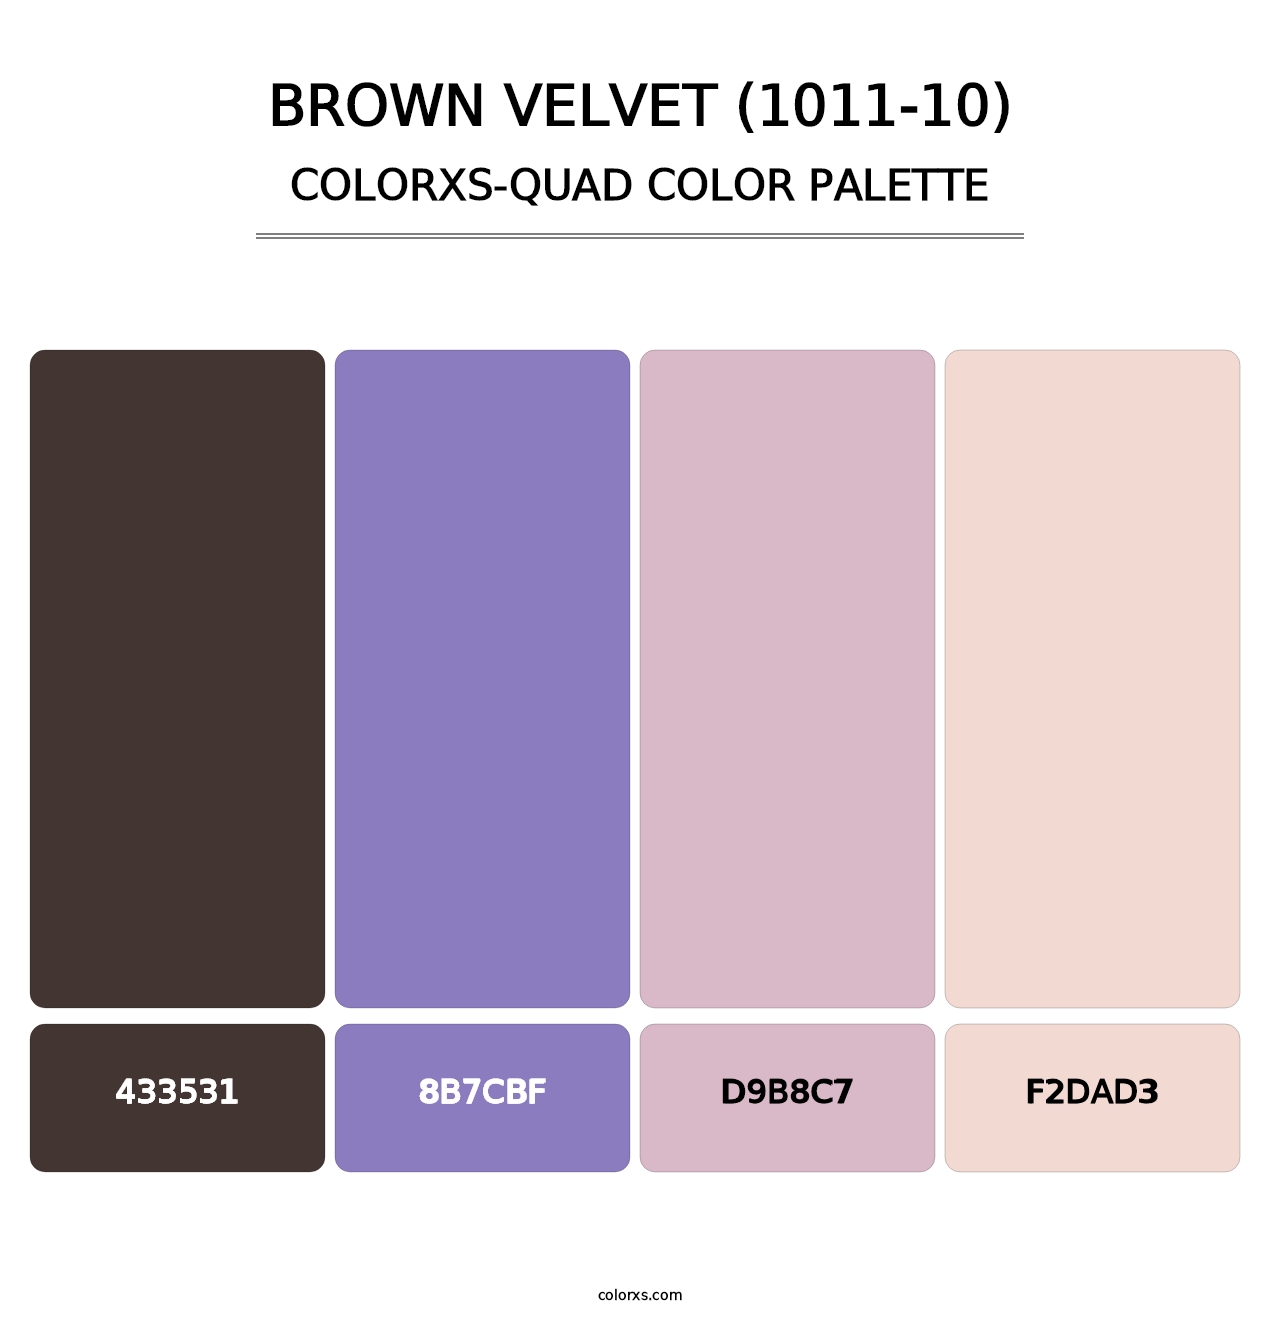 Brown Velvet (1011-10) - Colorxs Quad Palette